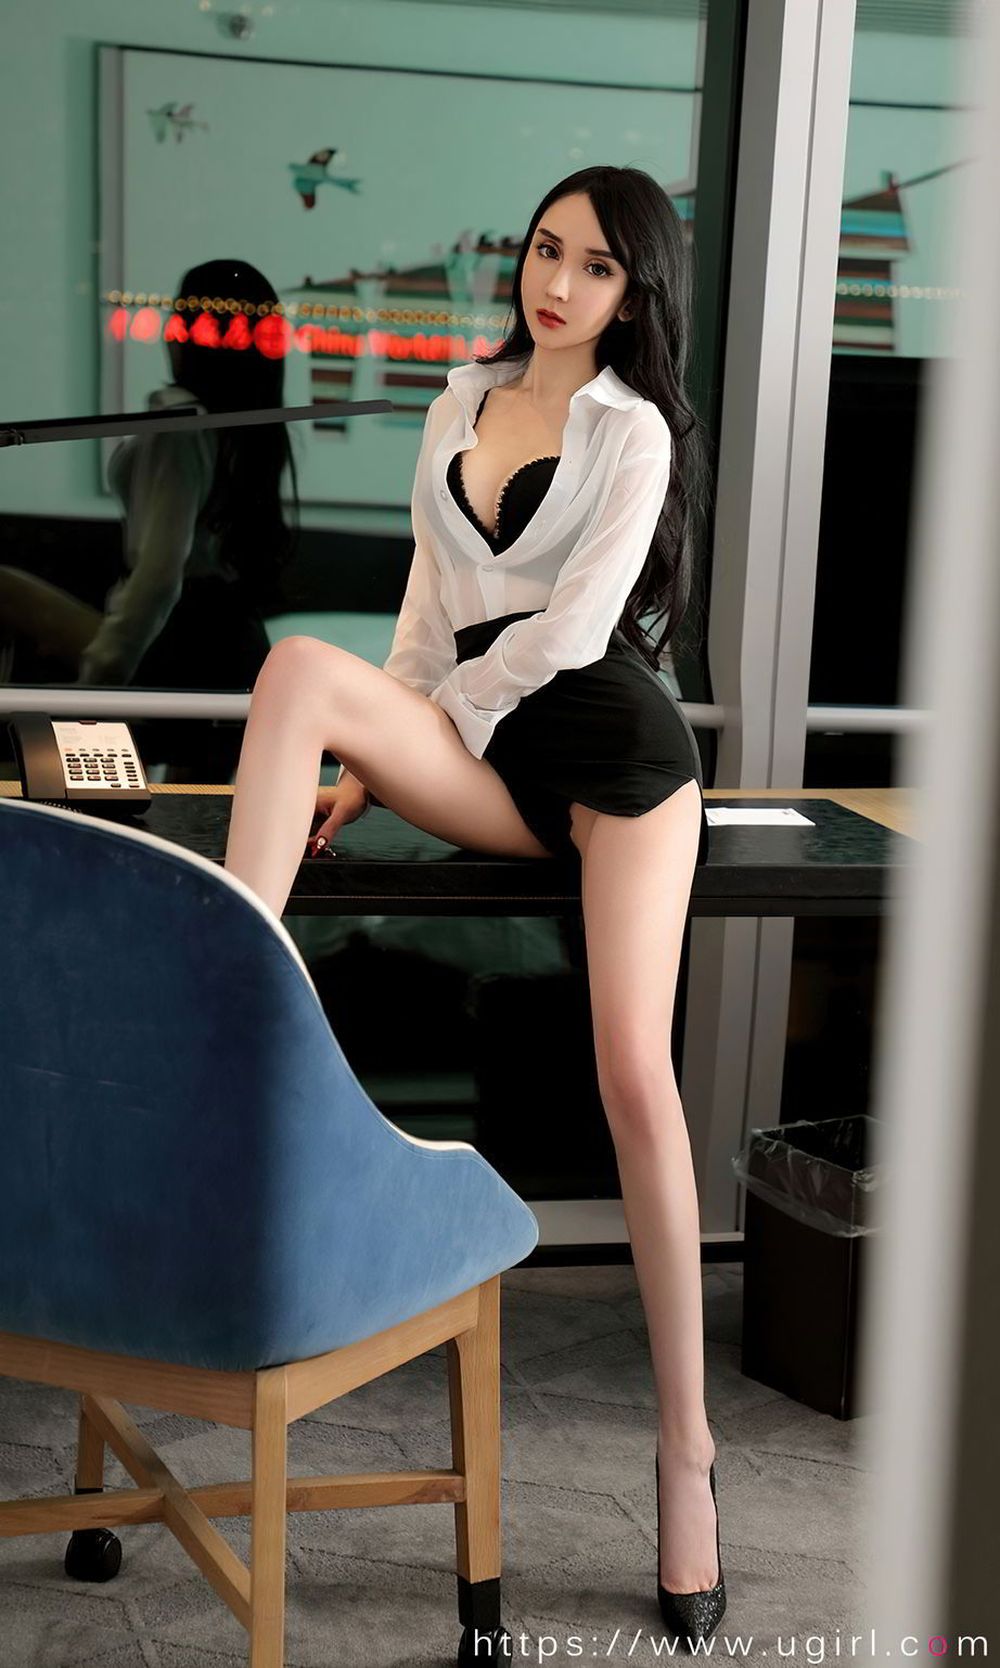 美女模特阿依努尔瓦娅半透白衬衫腿精主题性感写真